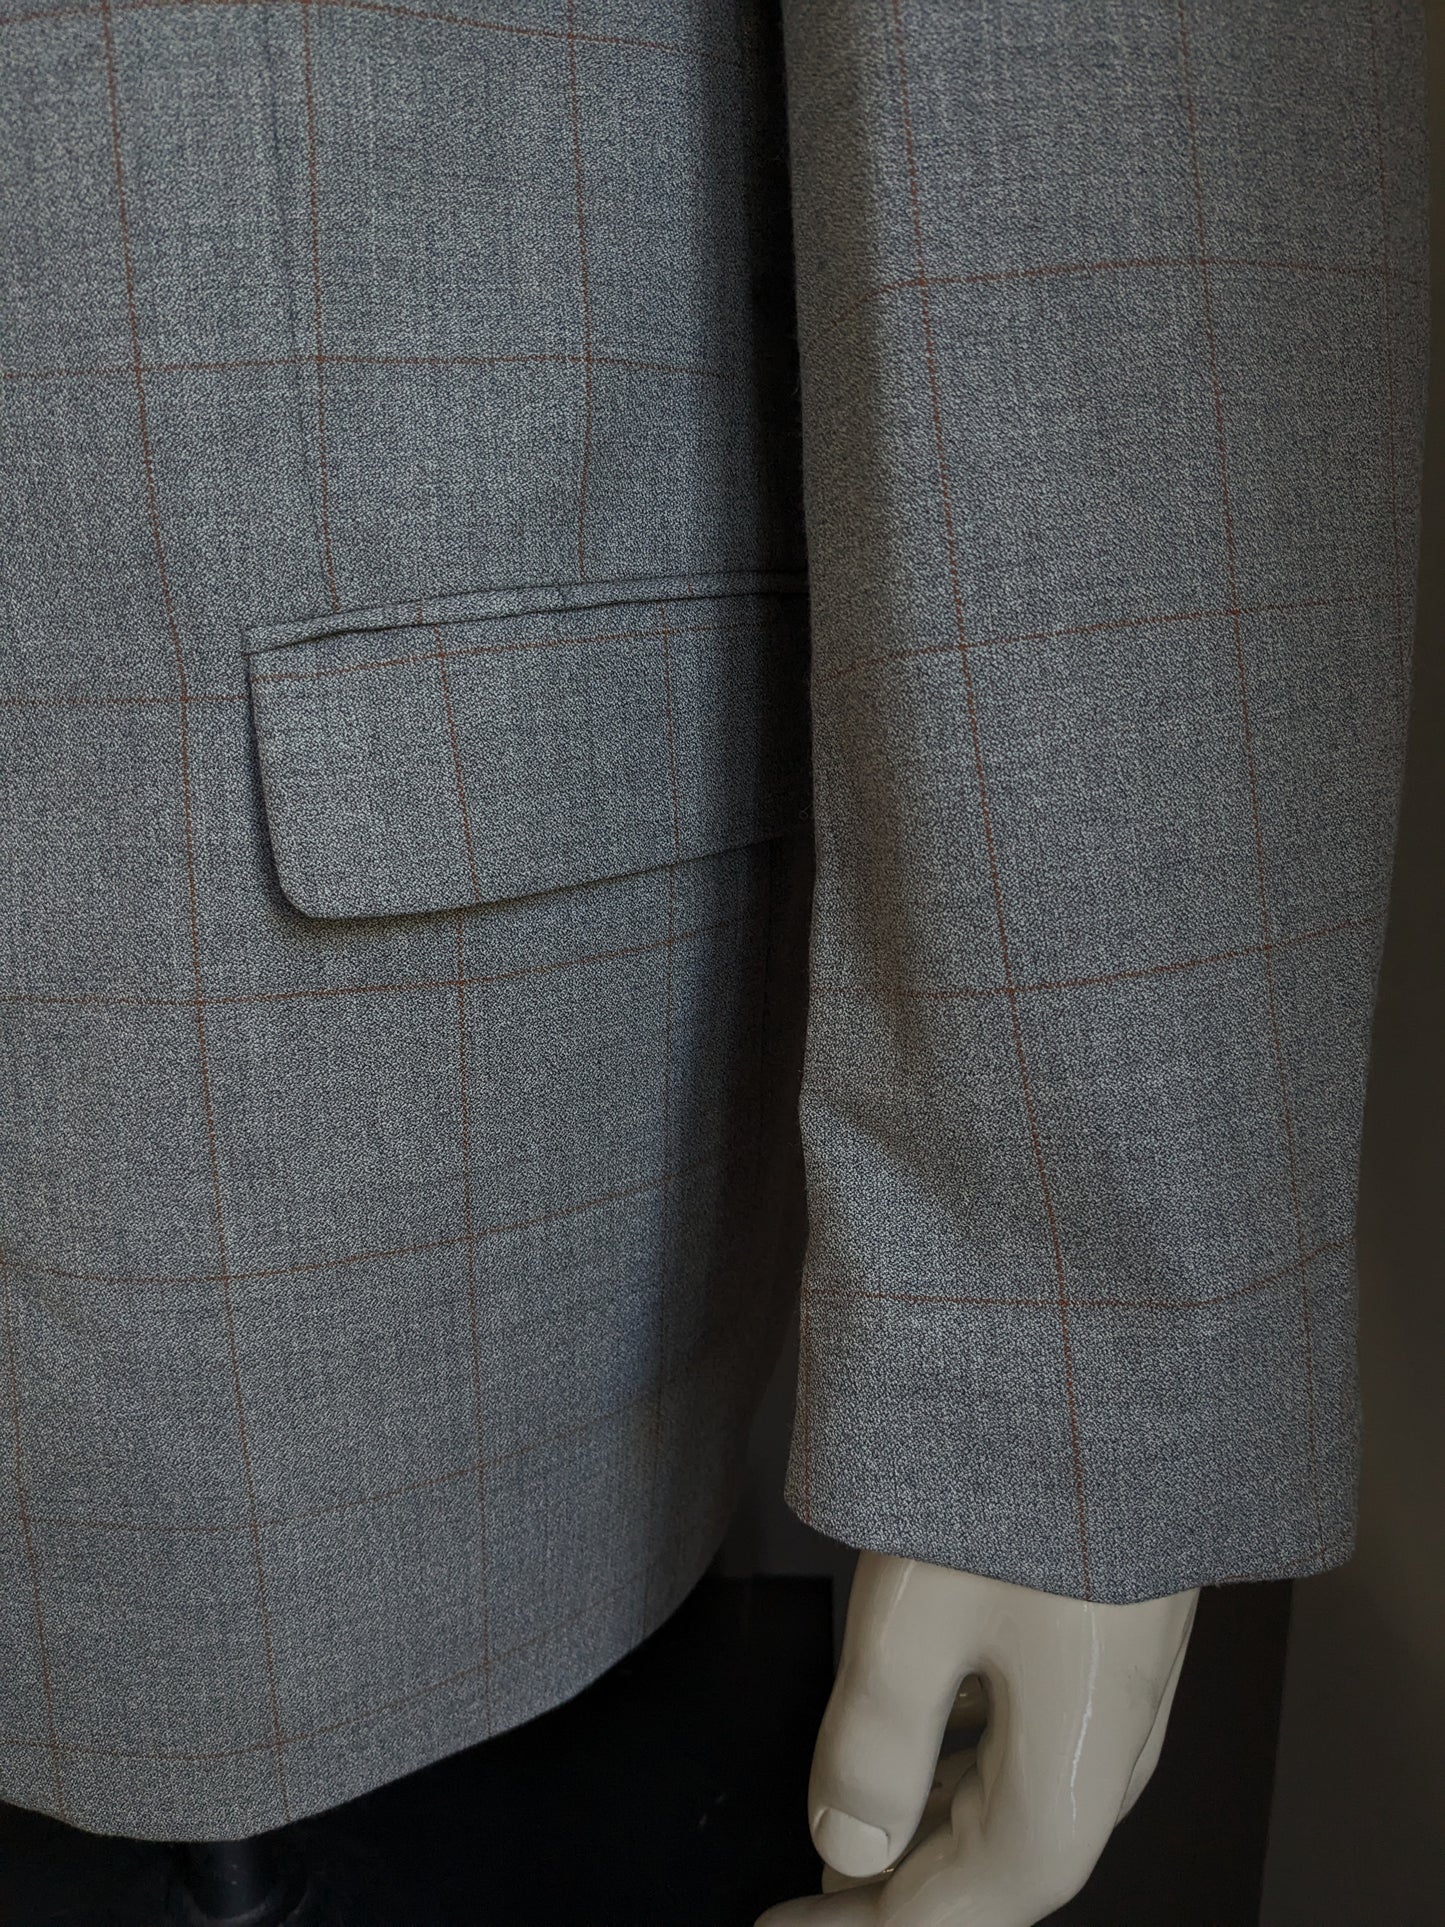 Chaqueta vintage de lana Bartlett & Walker. Marrón gris revisado. Tamaño 52 / L.